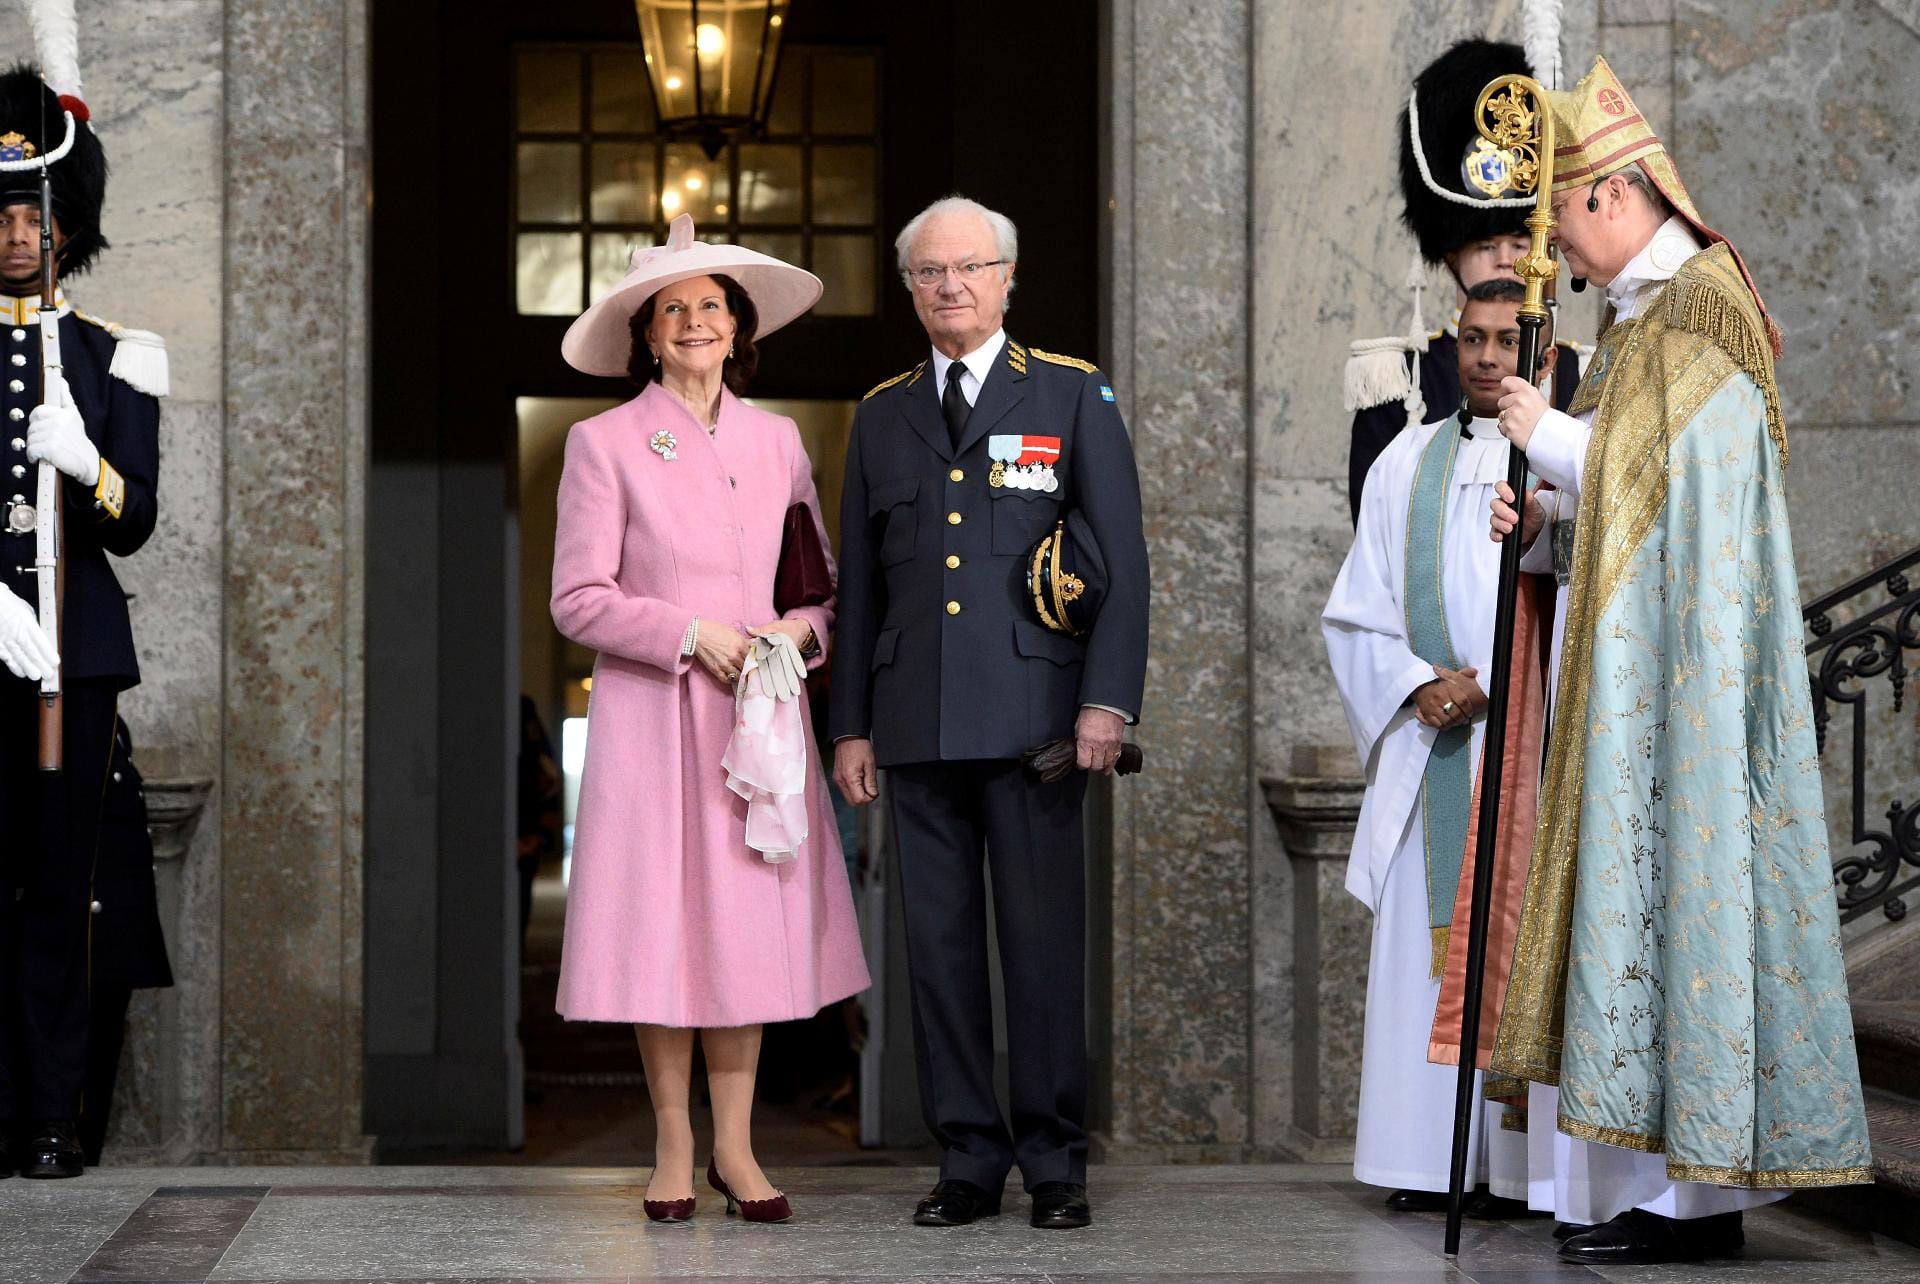 Sie alle sind zu seiner Geburtstagsfeier gekommen: König Carl Gustaf wurde 70 Jahre alt. Seine Frau Königin Silvia begleitete ihren Mann in einem rosafarbenen Kleid.